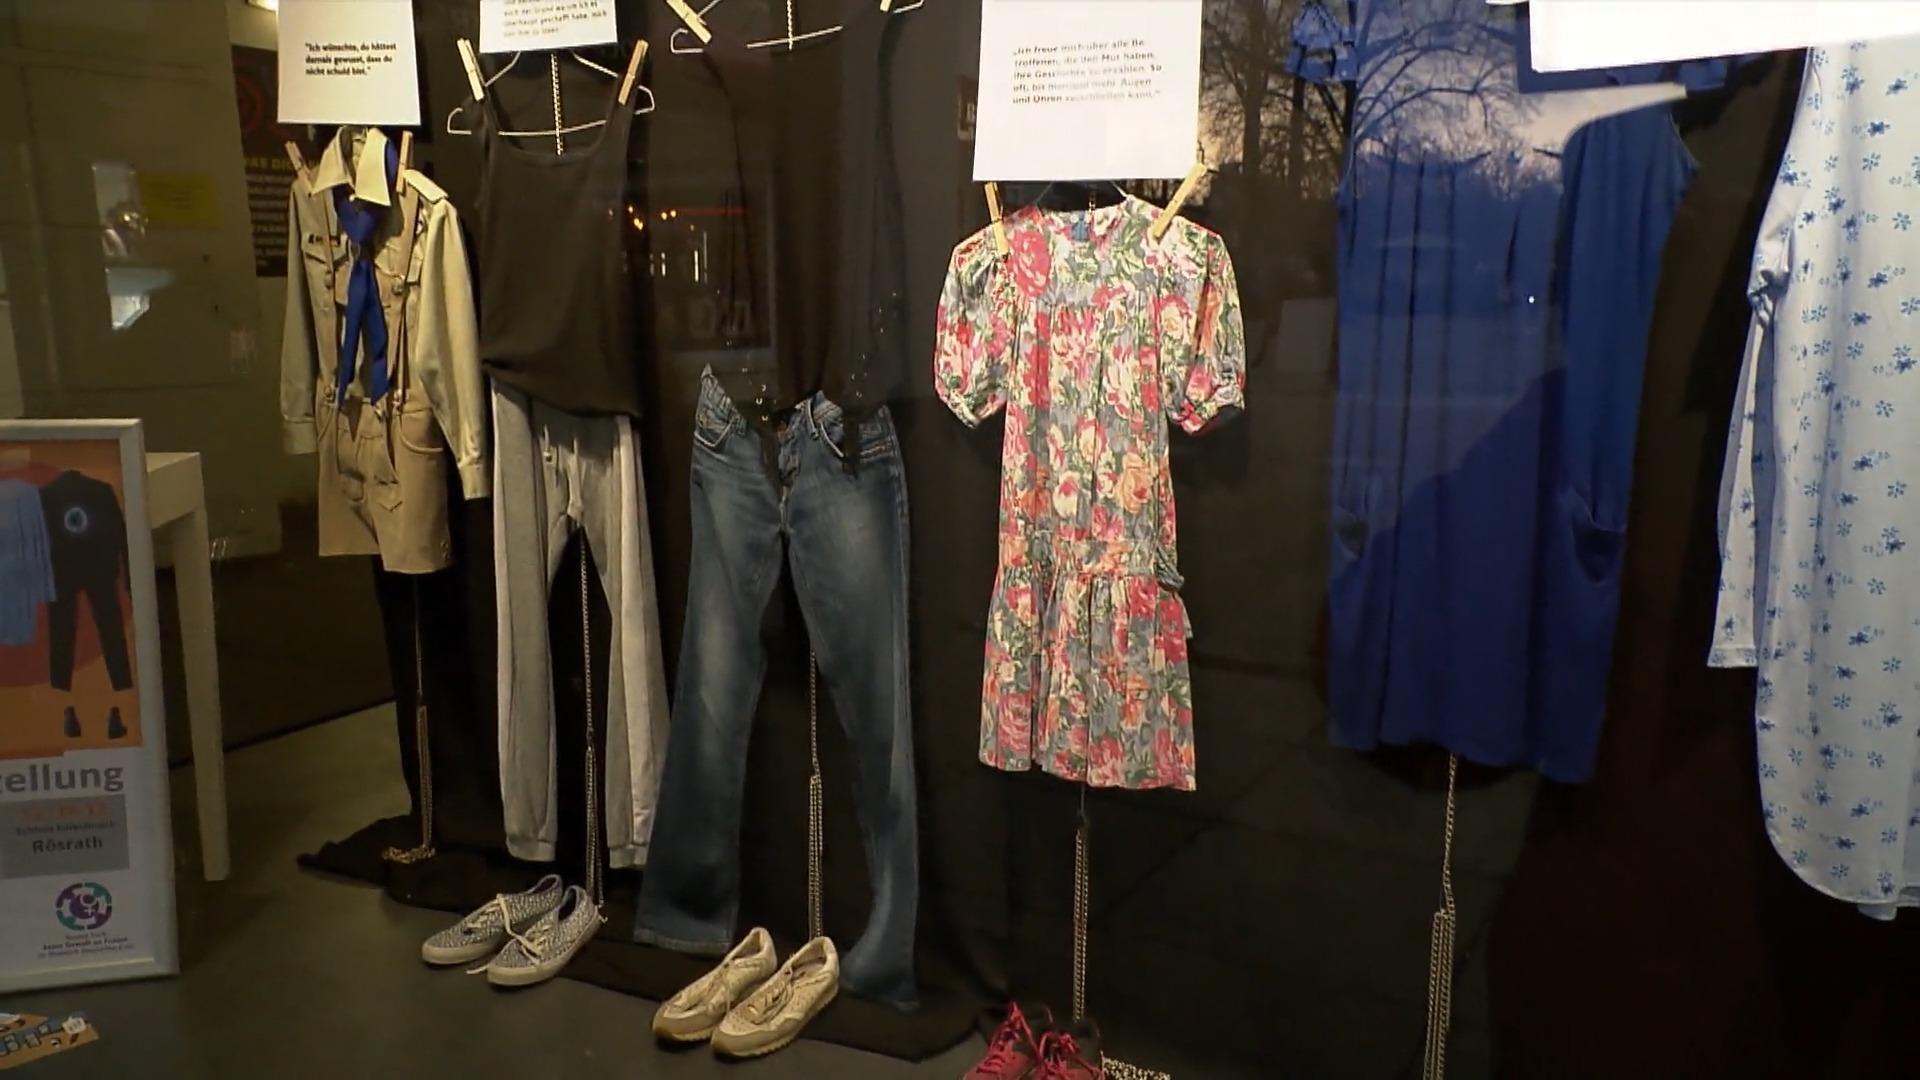 Ausstellung stellt die Kleidung von Missbrauchsopfern aus Sexueller Missbrauch